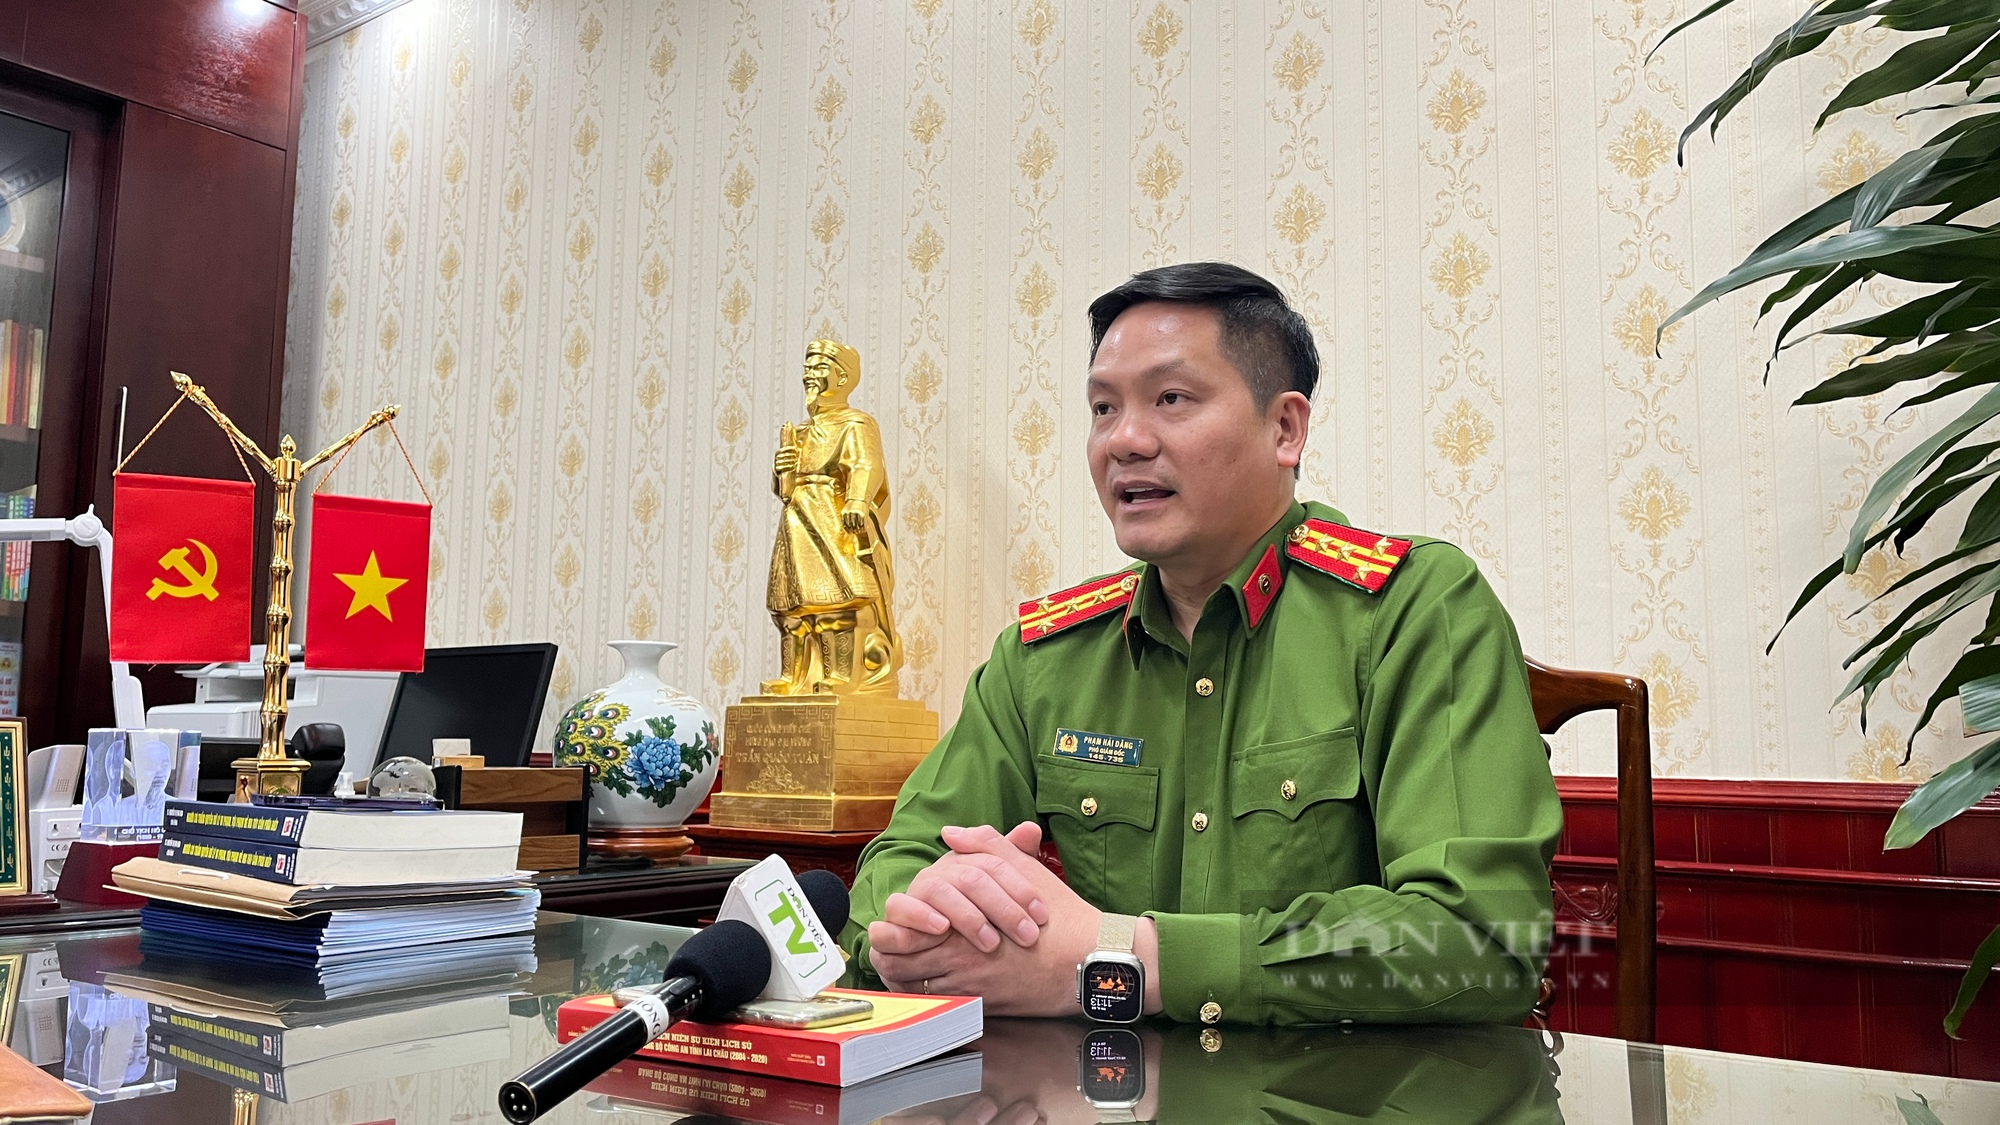 Thủ trưởng cơ quan CSĐT công an tỉnh Lai Châu: Xử lý nghiêm minh, thượng tôn pháp luật vụ phá rừng ở Sìn Hồ - Ảnh 8.